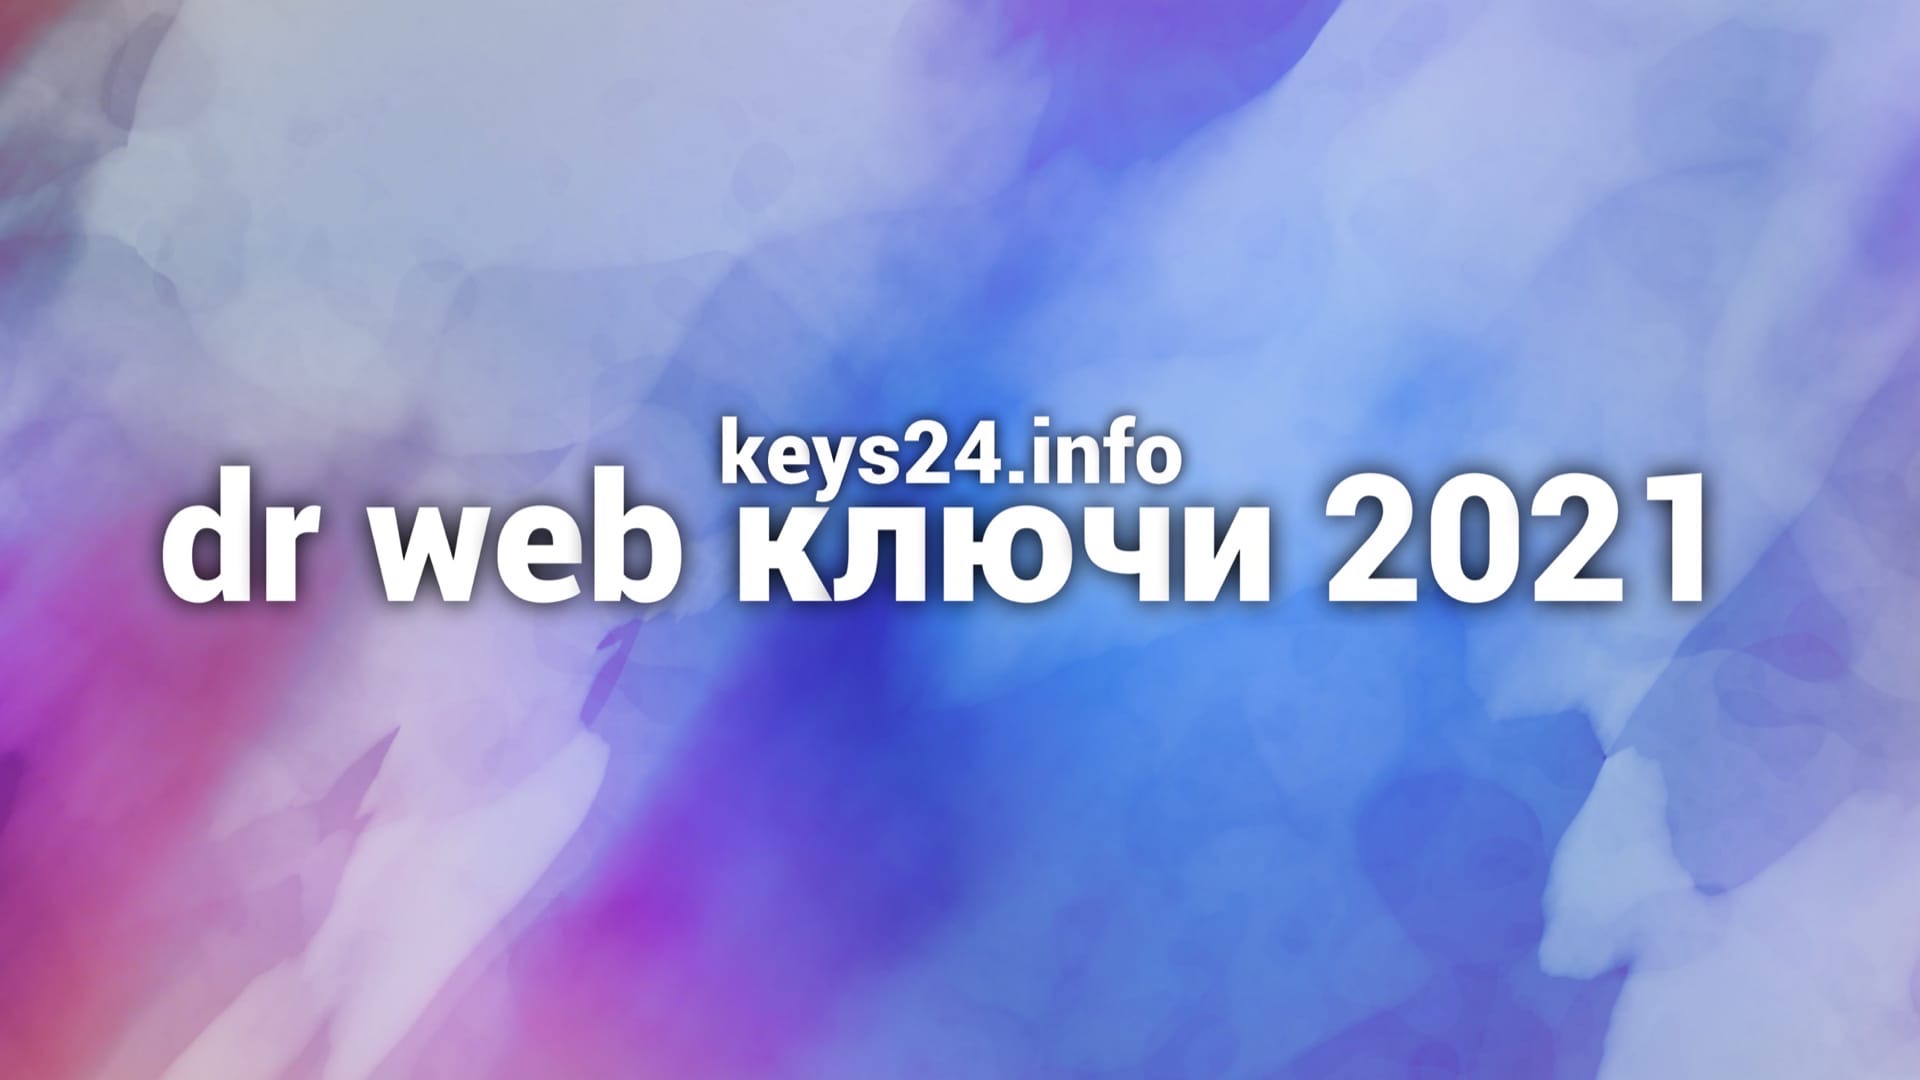 dr web ключи 2021